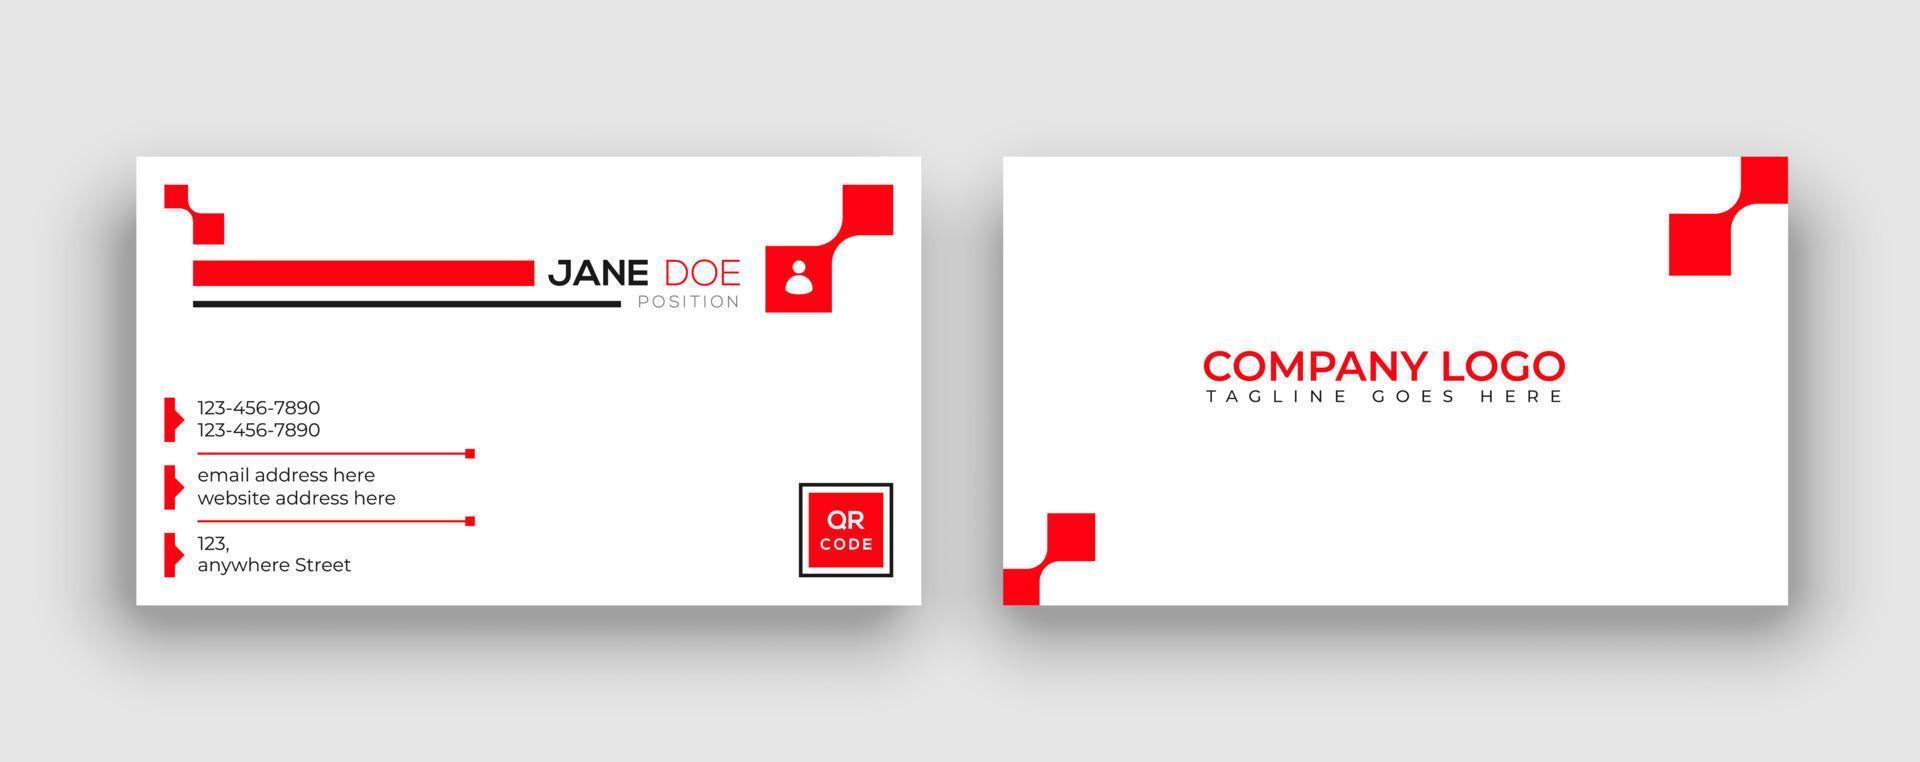 plantillas de tarjetas de visita. tarjeta de visita roja moderna, simple y creativa. Tarjeta de visita de doble cara abstracta y limpia en un tamaño estándar. vector